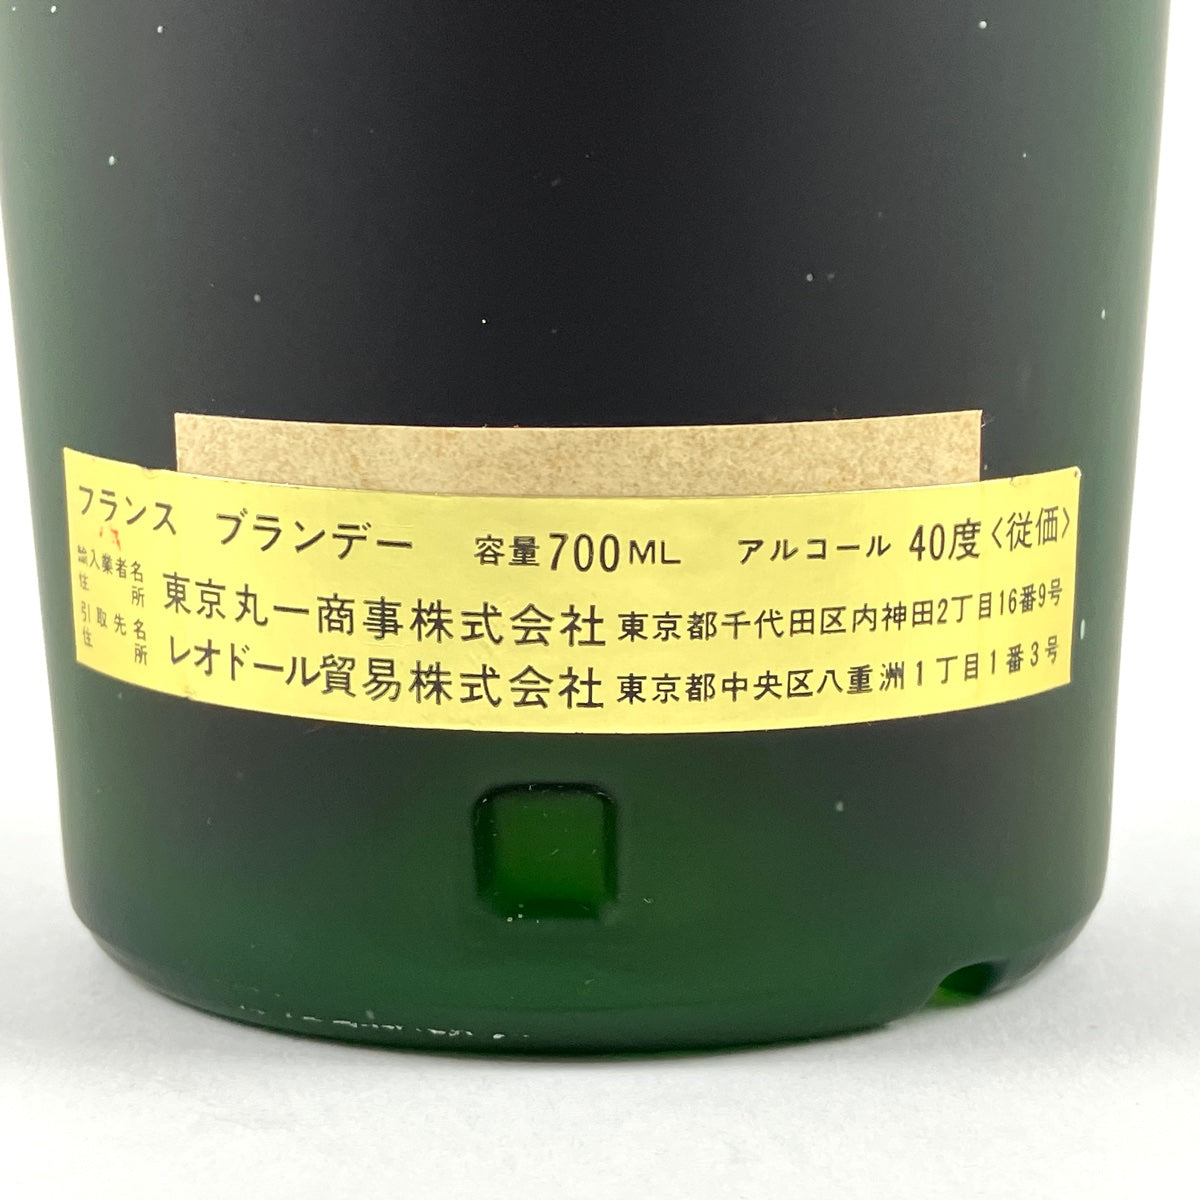 ドゥニムニエ DENIS-MOUNIE エクストラ 700ml ブランデー コニャック 【古酒】